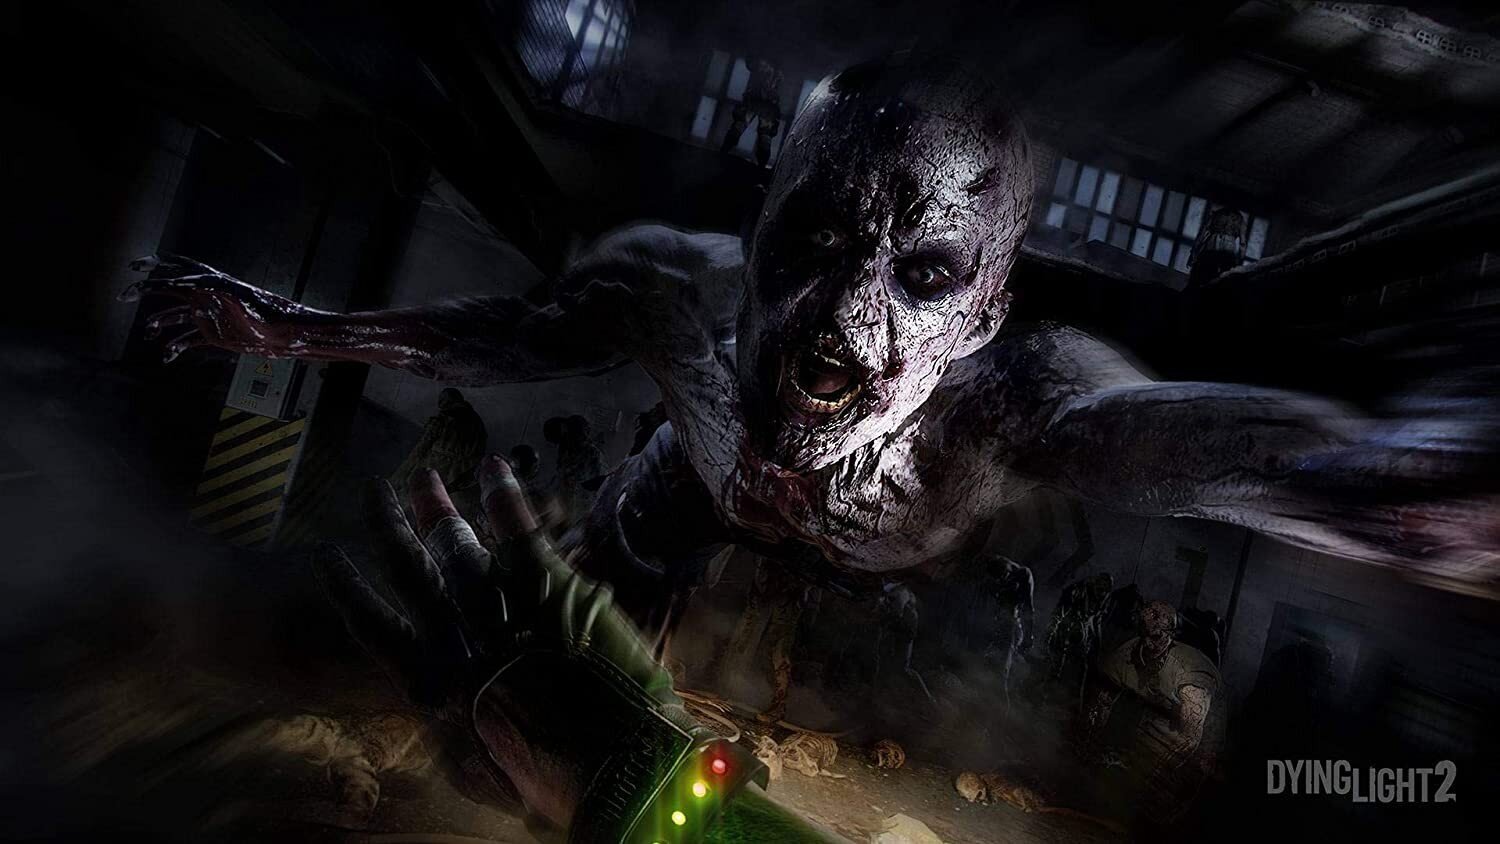 Dying Light 2 Xbox One / Xbox Series X cena un informācija | Datorspēles | 220.lv